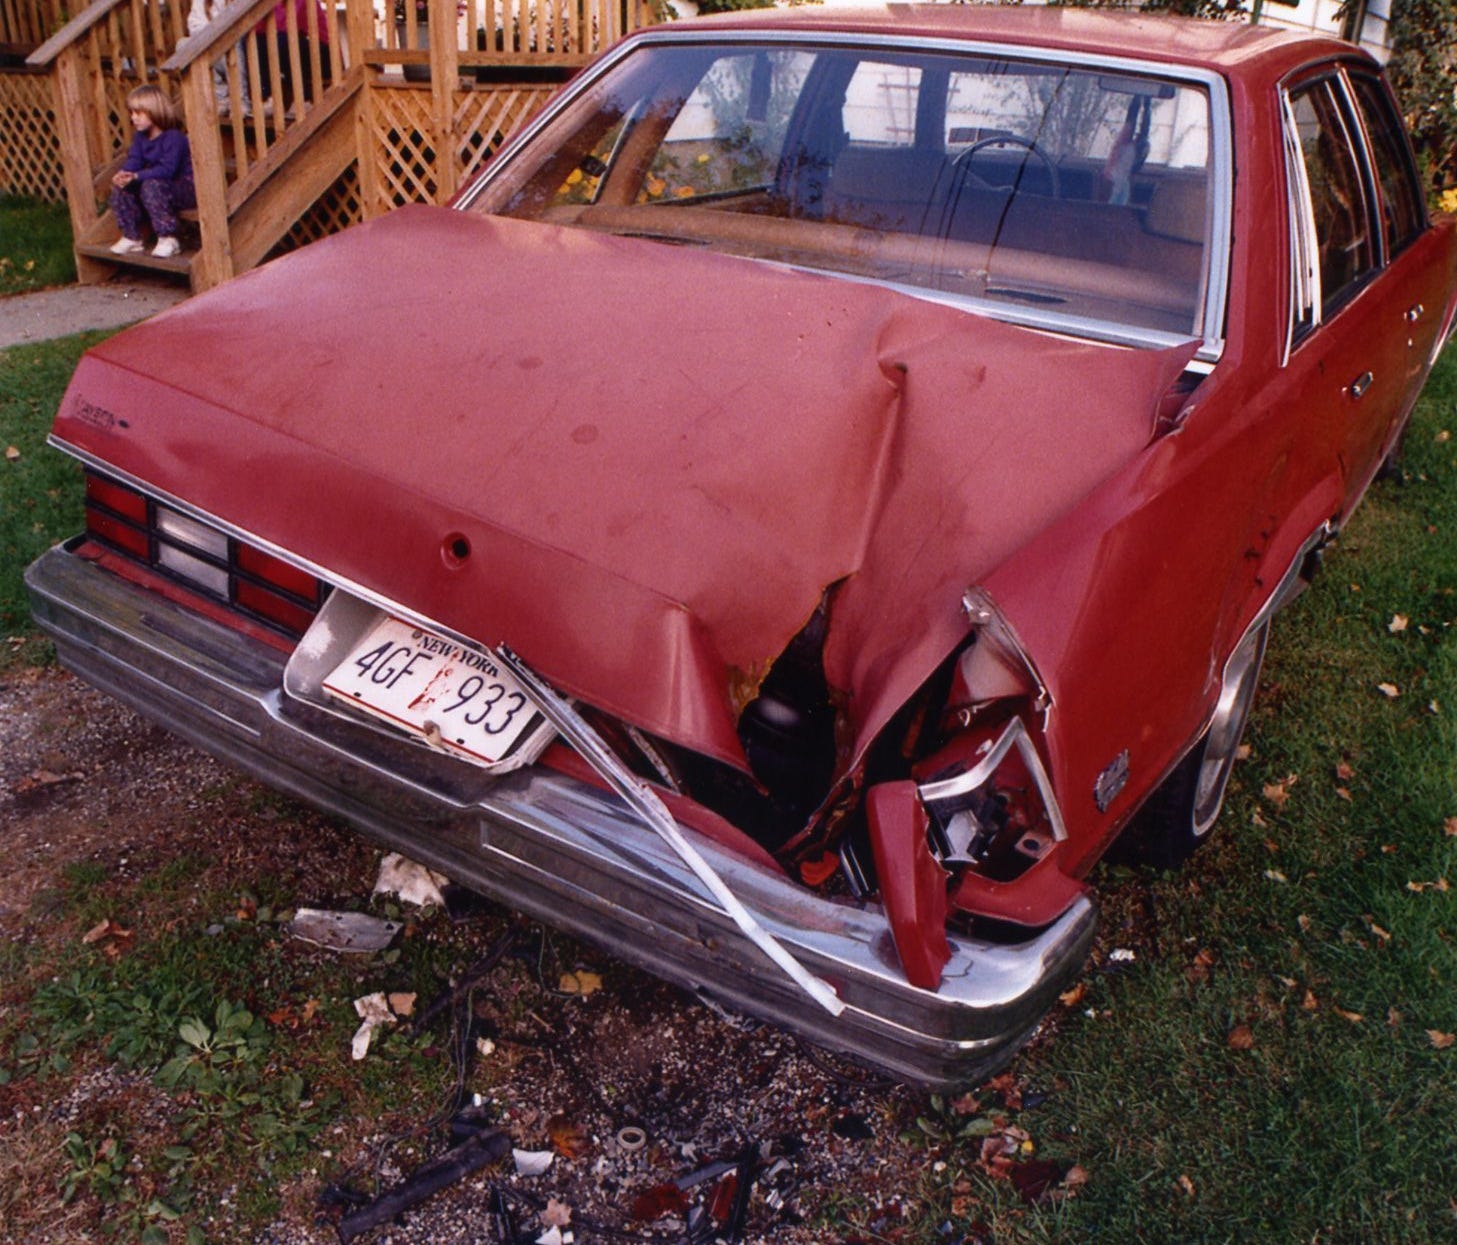 A meteorite struck this car in Peekskill in 1992.